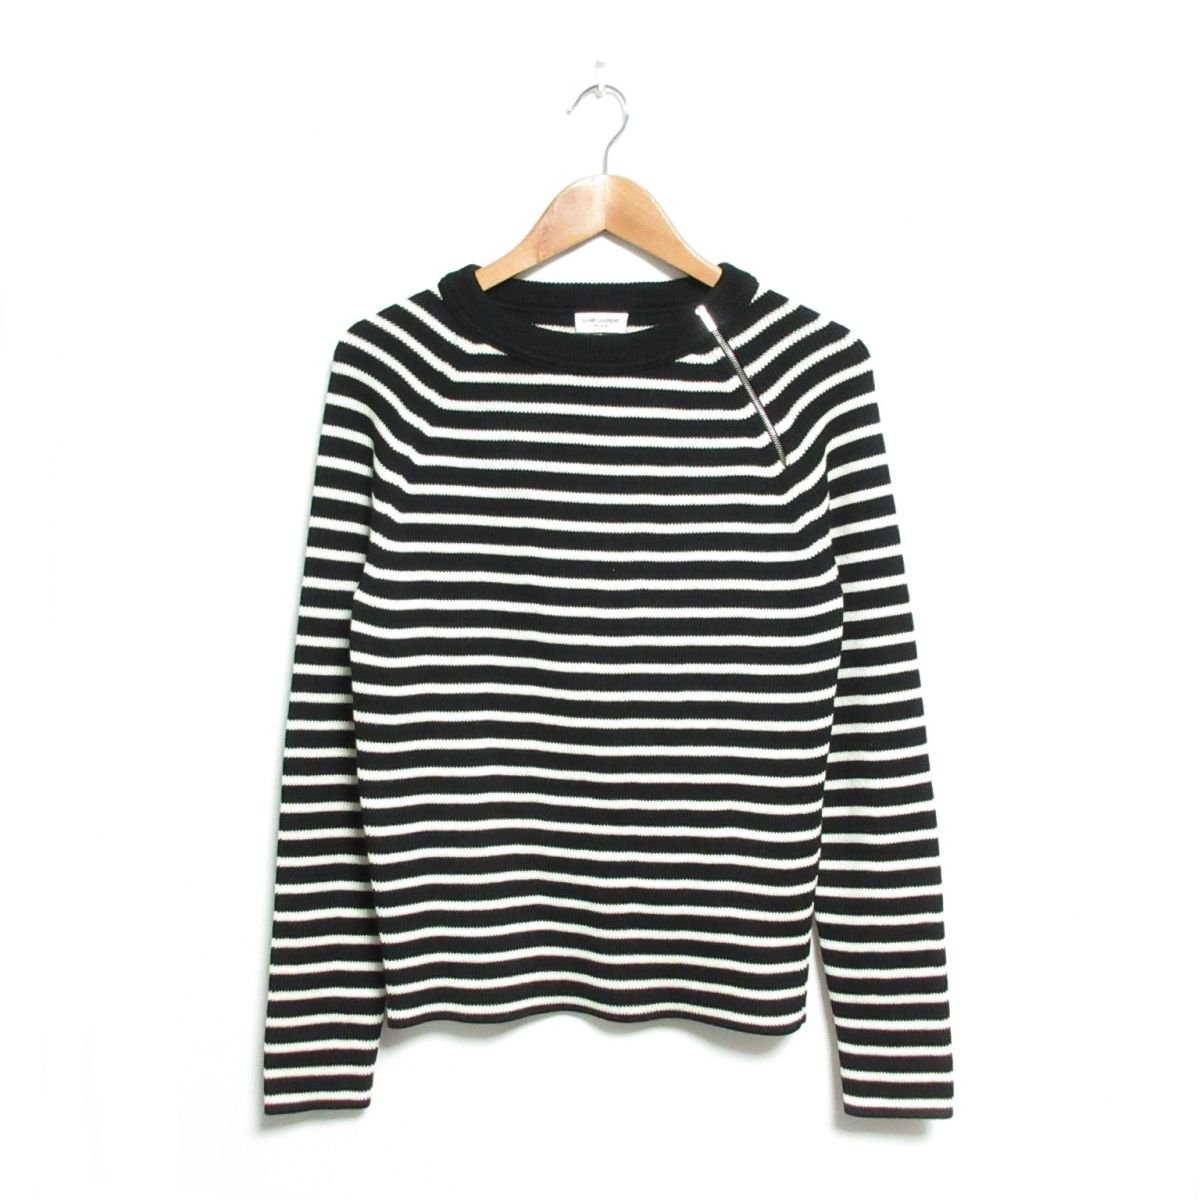 Sweater - Tops - For man - Yves saint Laurent, YSL - (Japanese